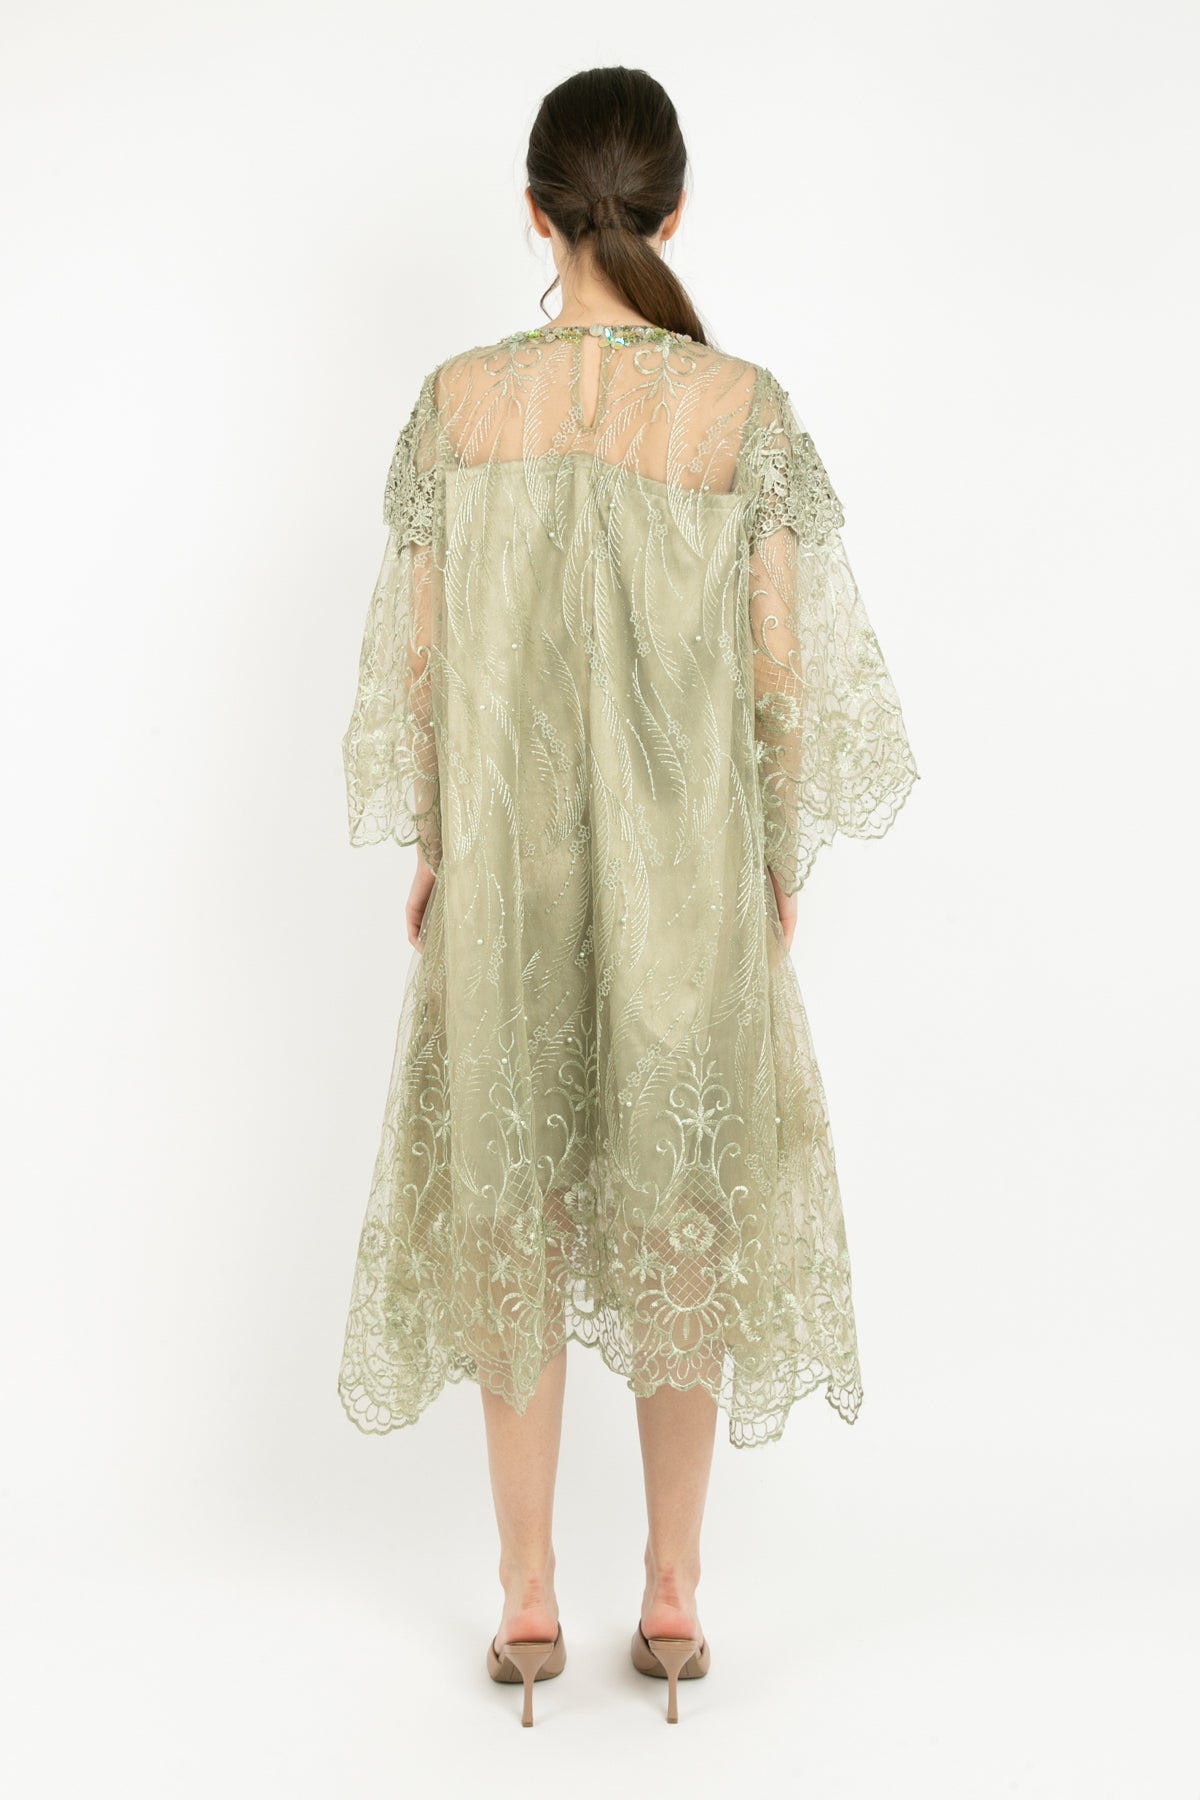 Vivienne Dress in Sage Green